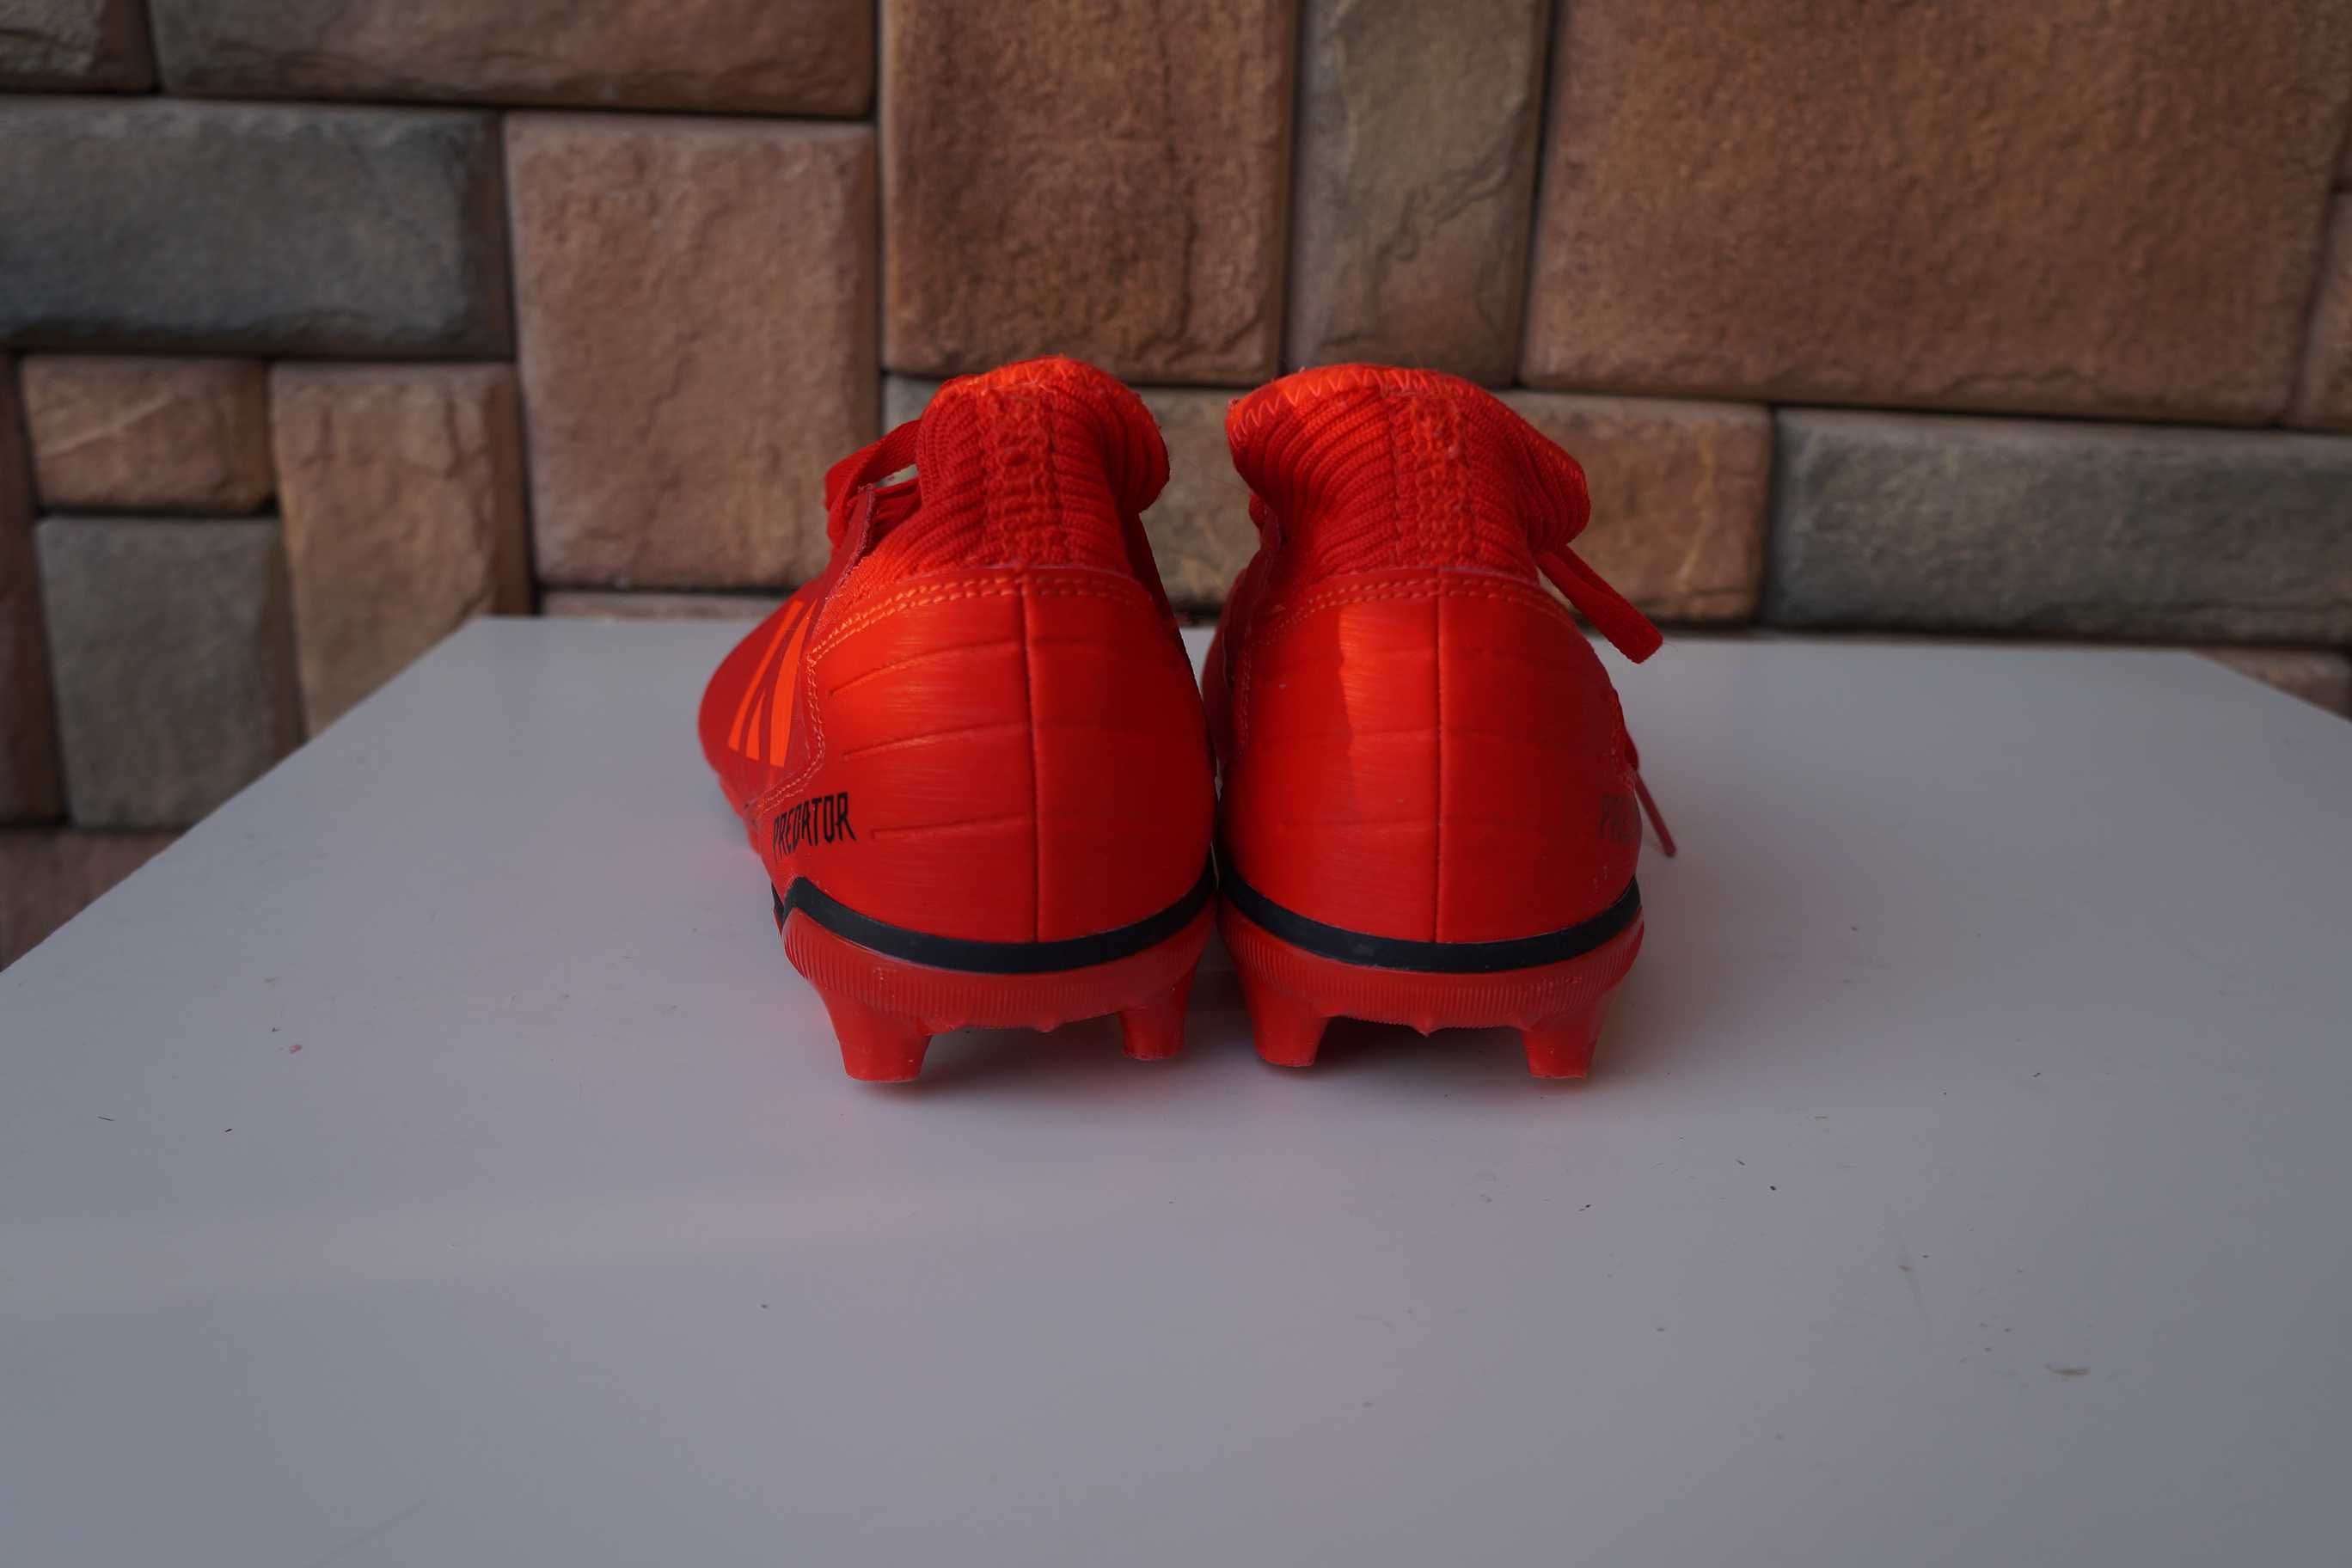 Buty piłkarskie korki Adidas Predator 19.3 czerwone - 36 2/3